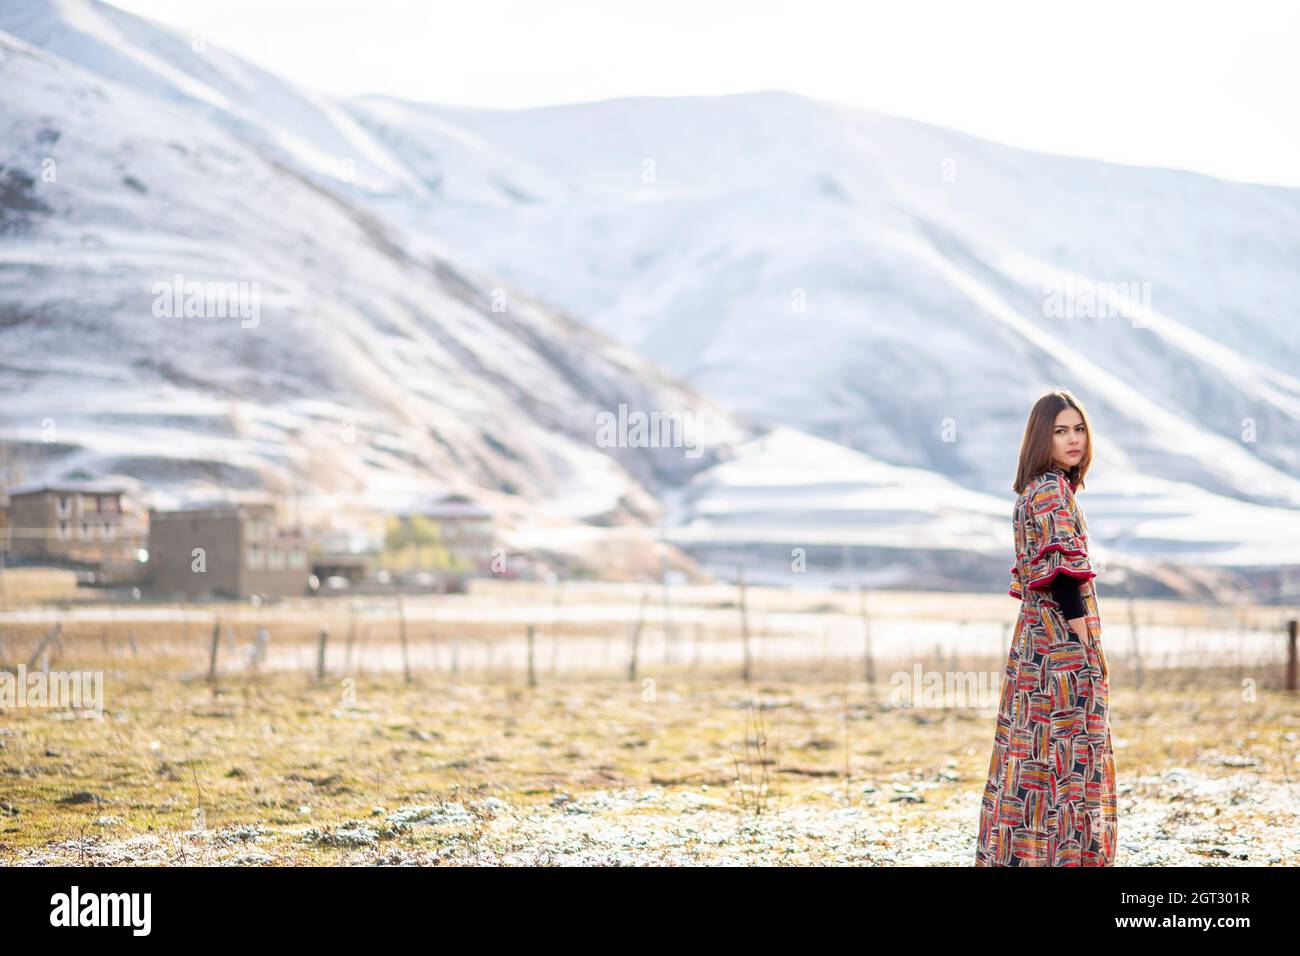 Vue latérale Portrait d'une femme debout sur le terrain contre les montagnes enneigées Banque D'Images